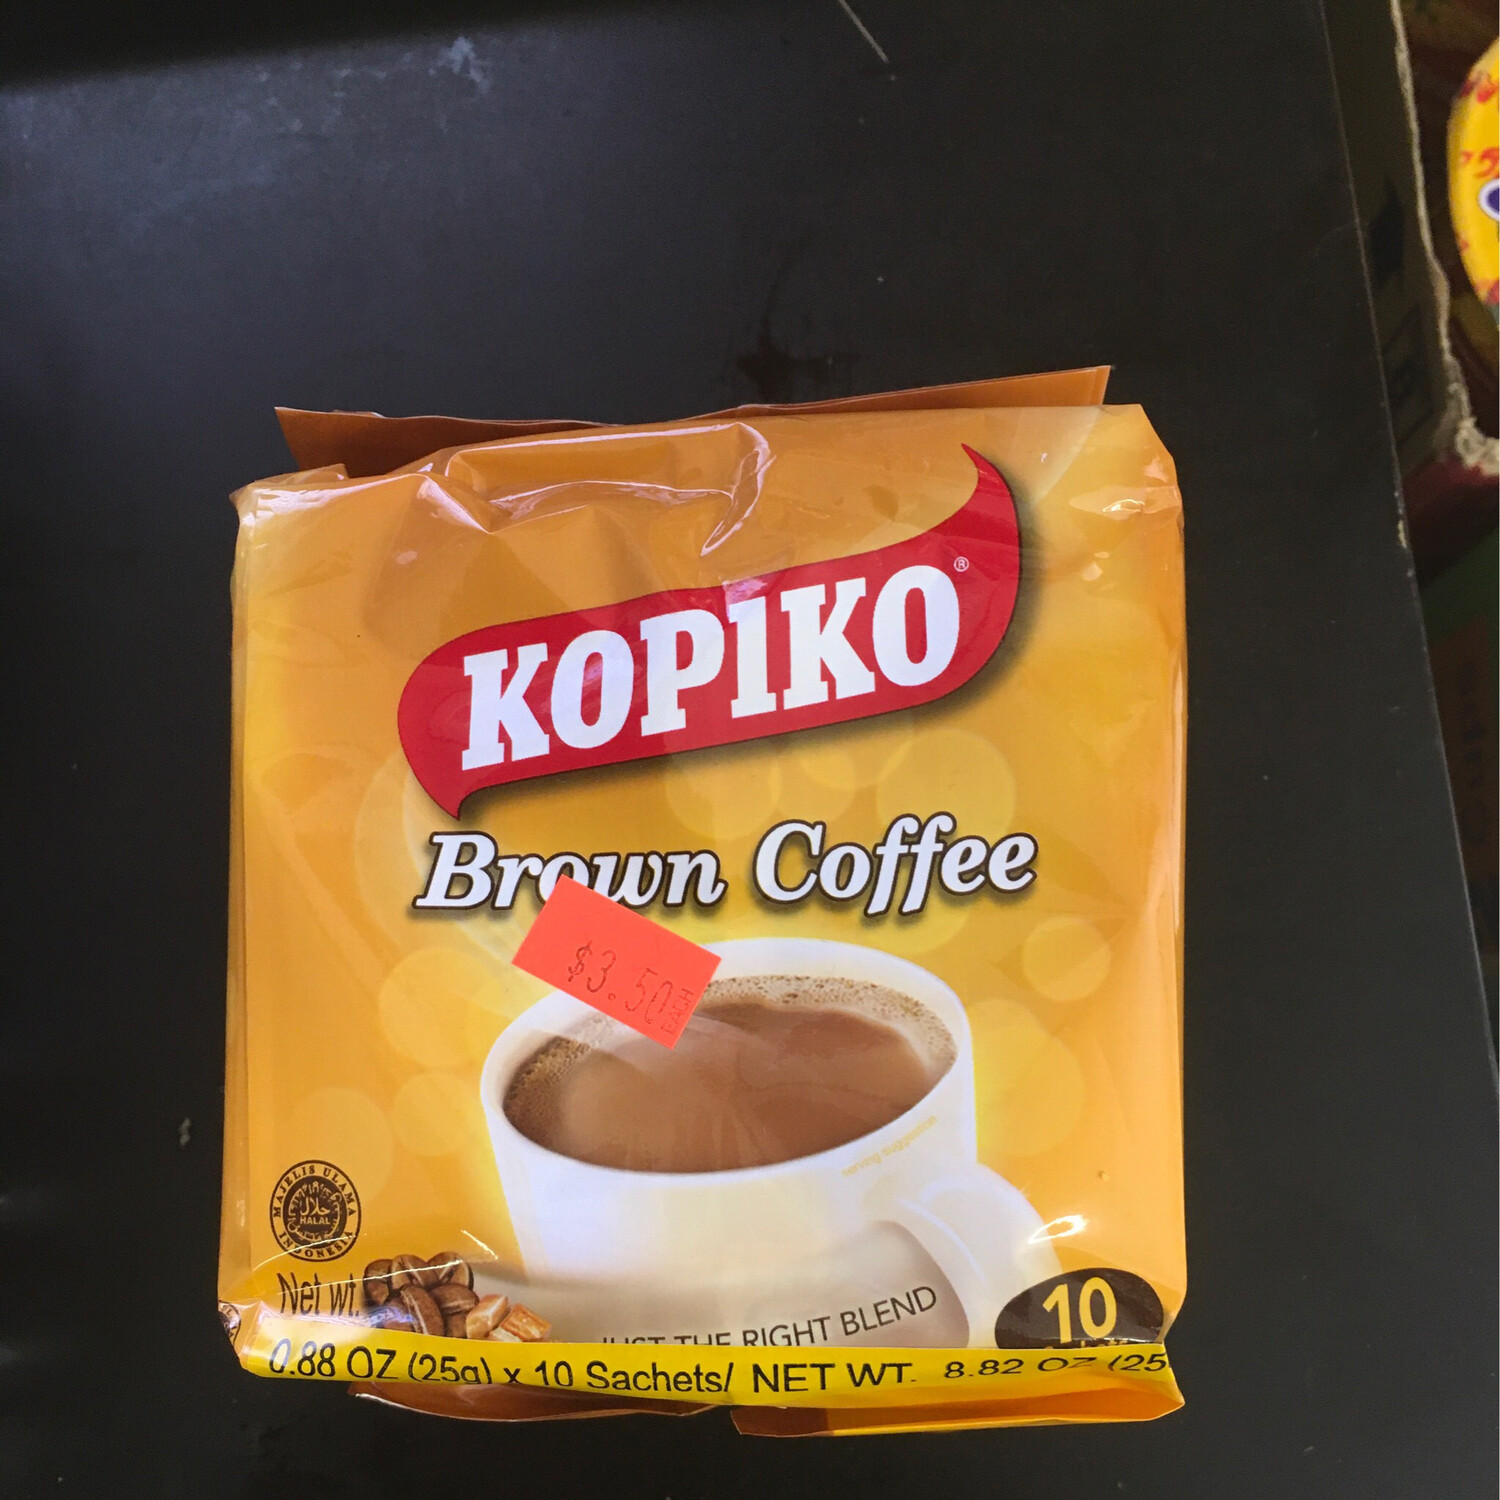 Kopiko Browm Coffee 250 grams (10 Sachets)